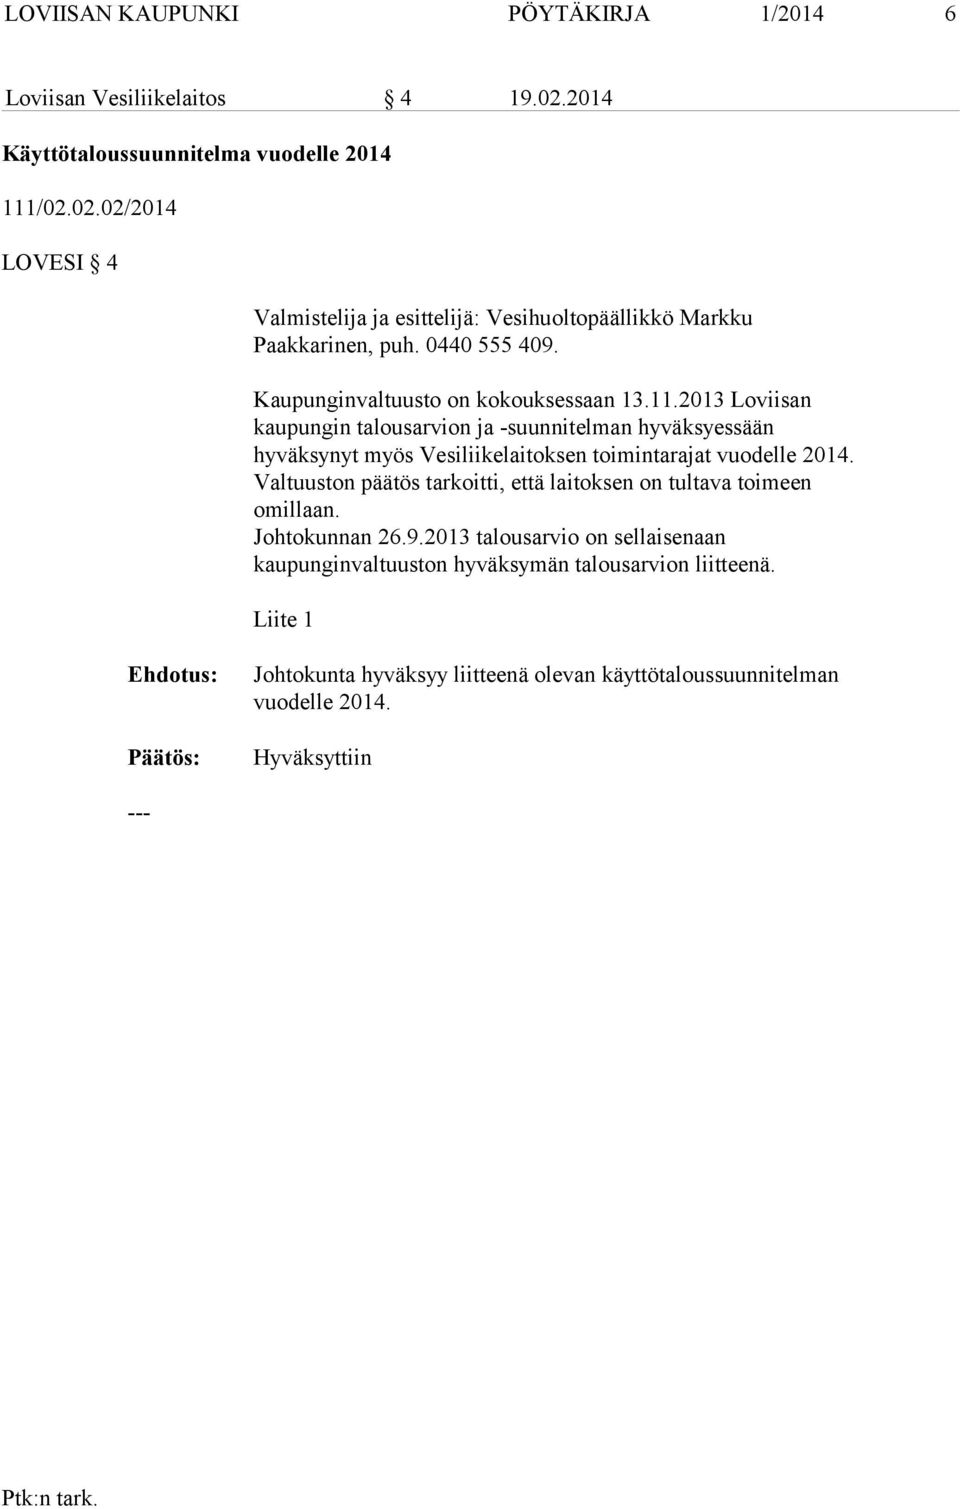 2013 Loviisan kaupungin talousarvion ja -suunnitelman hyväksyessään hyväksynyt myös Vesiliikelaitoksen toimintarajat vuodelle 2014.